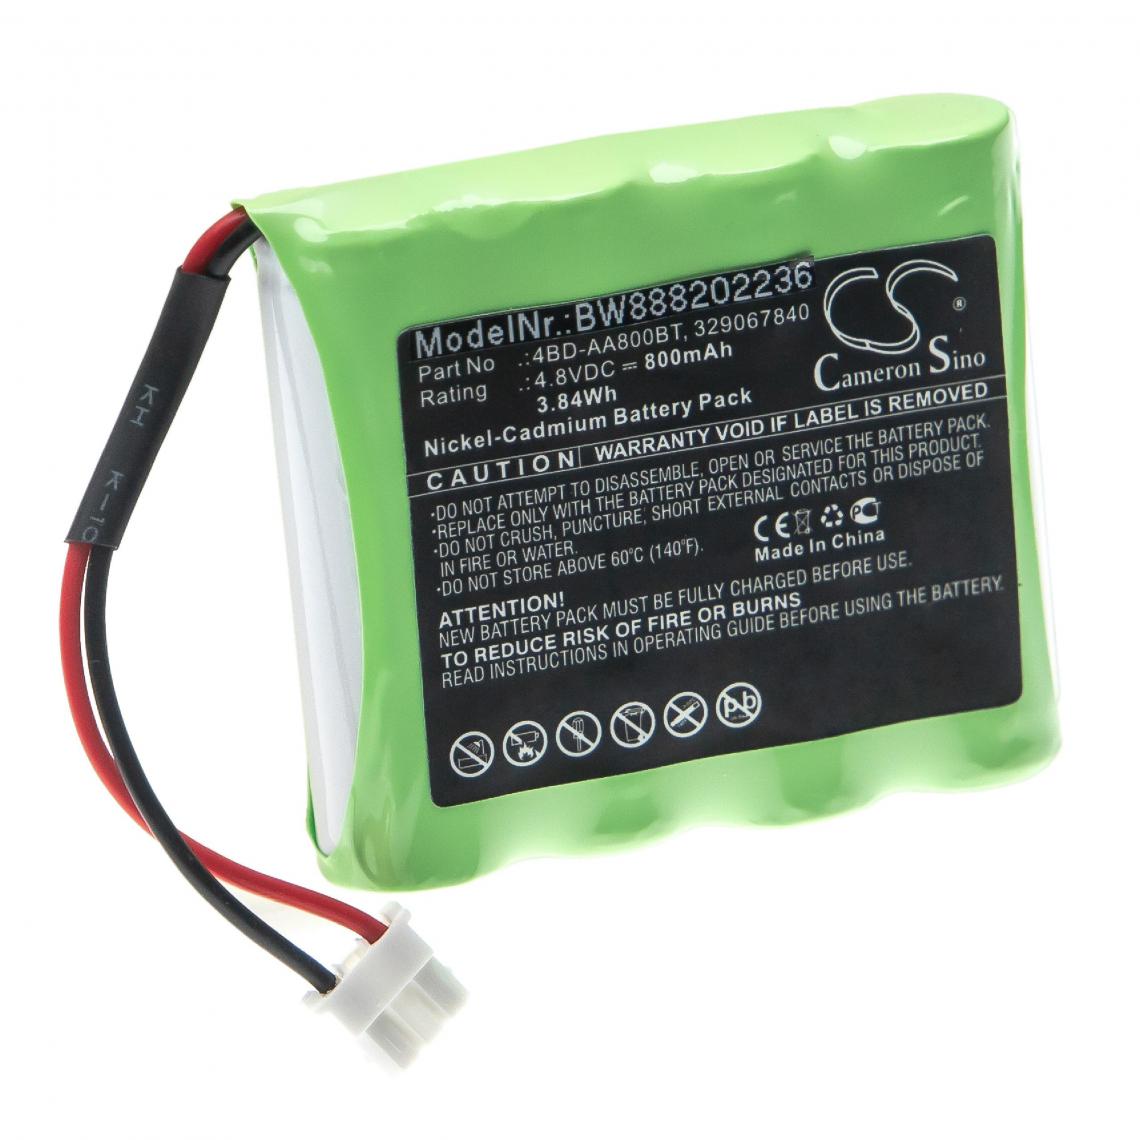 Vhbw - vhbw Batterie remplacement pour Schneider 329067840, 4BD-AA800BT, 513141006 pour éclairage d'issue de secours (800mAh, 4,8V, NiCd) - Autre appareil de mesure